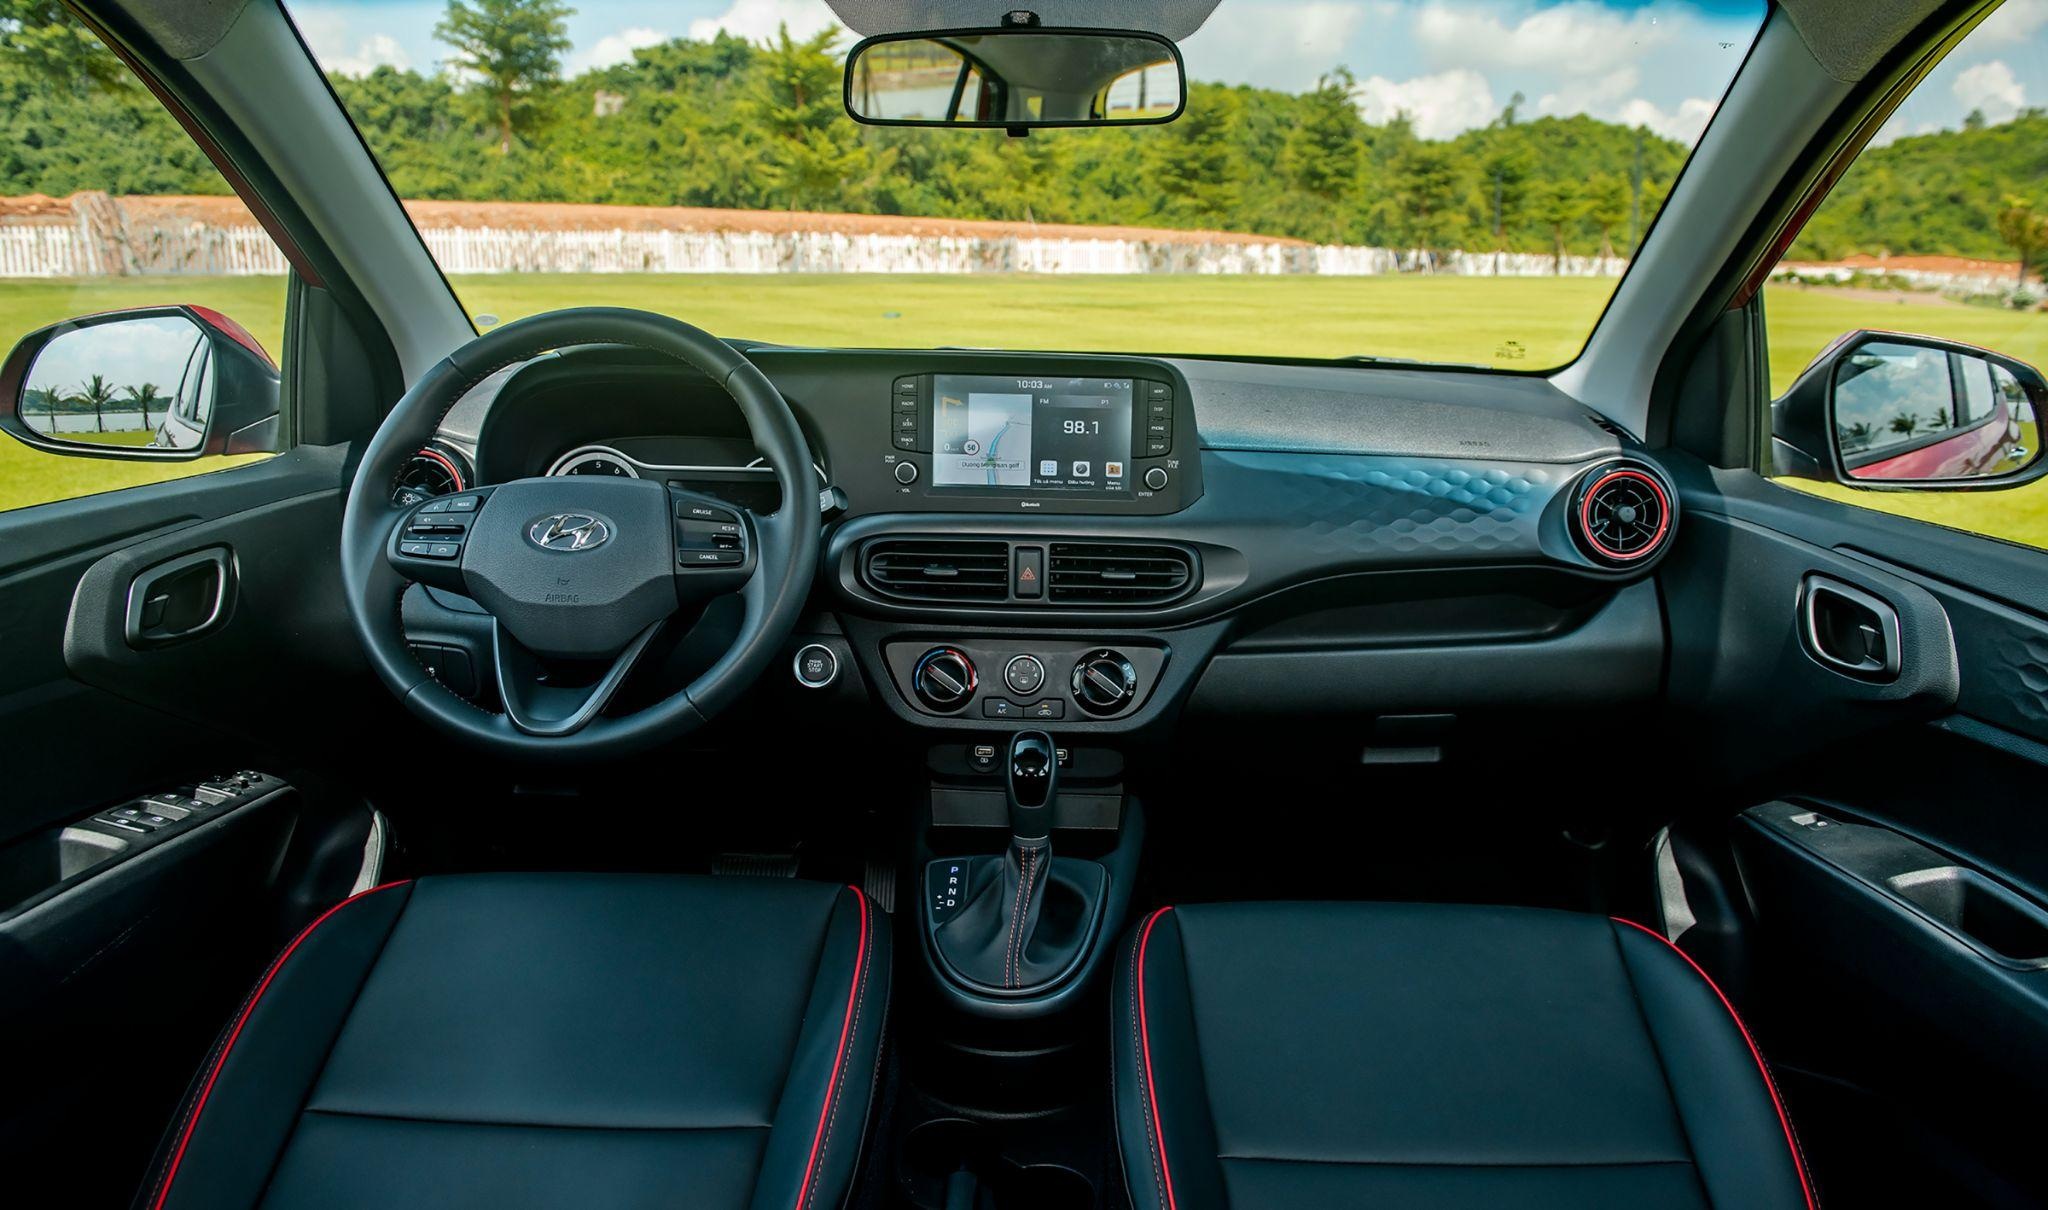 View -     Wigo 2023 "đấu" Hyundai i10: Xe Nhật tiết kiệm xăng, giá tốt hơn ô tô Hàn | Báo Dân trí